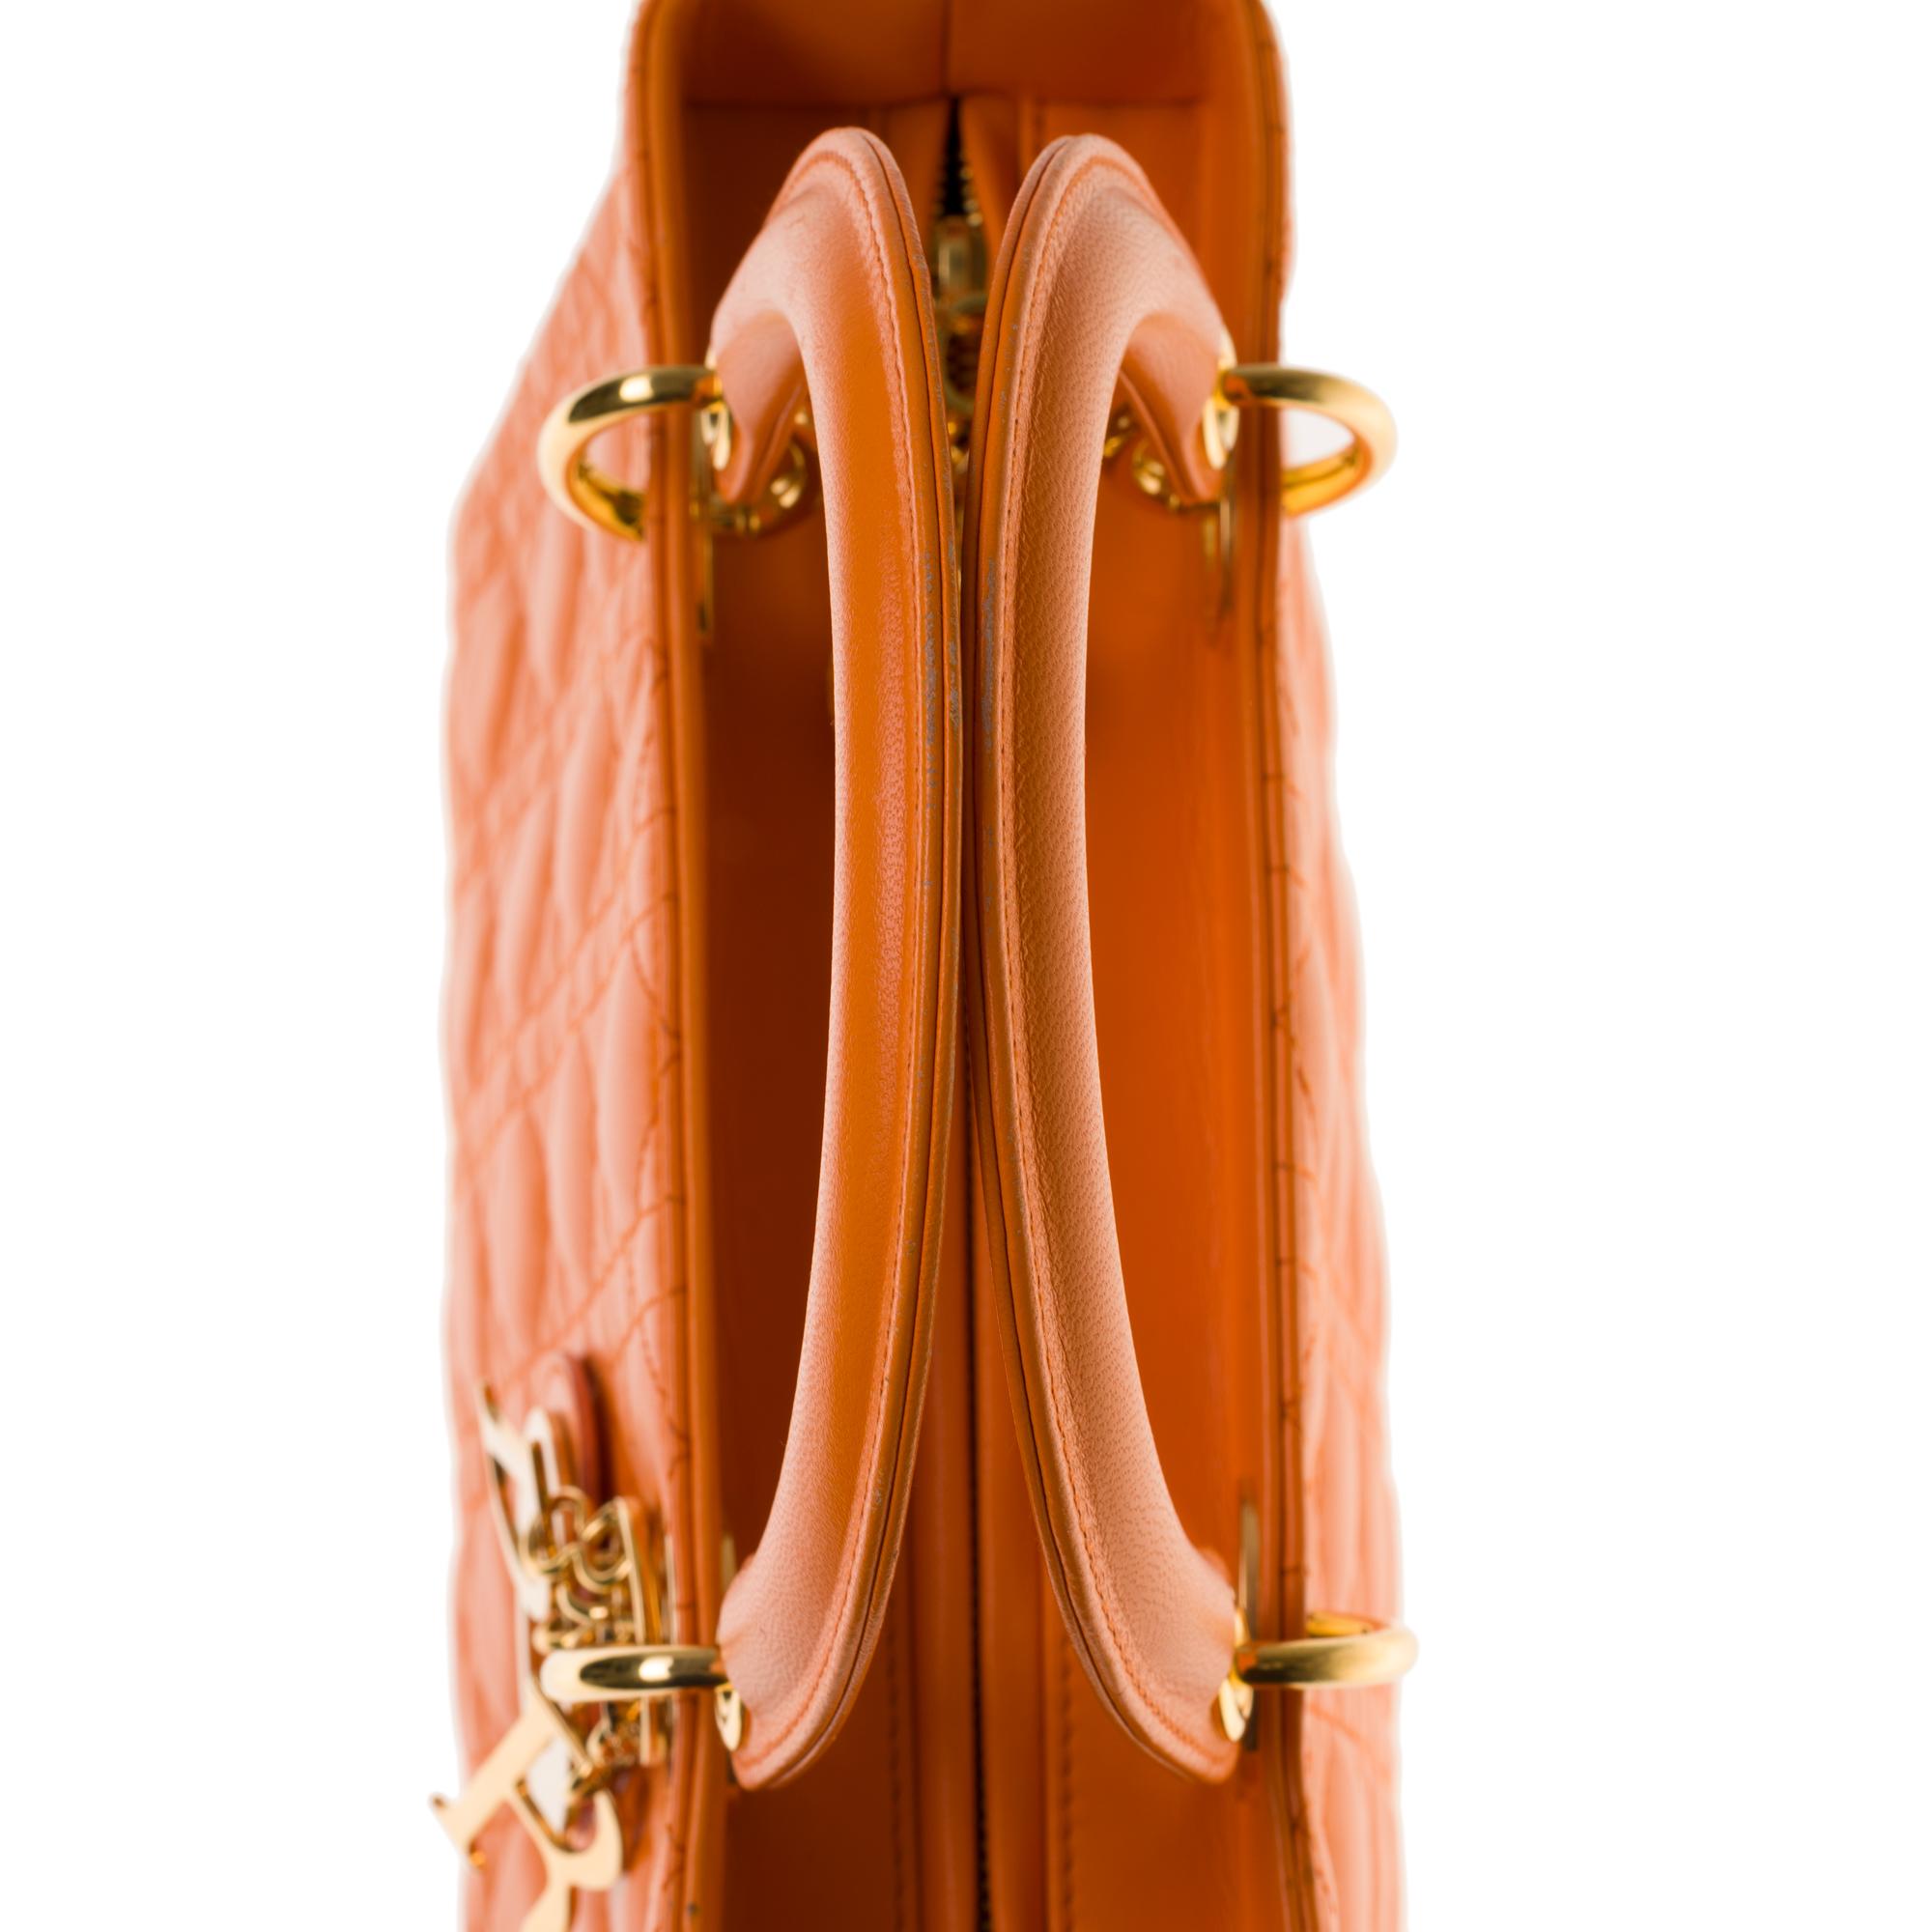  Christian Dior Lady Dior Medium size handbag in Pumpkin cannage leather, GHW 1